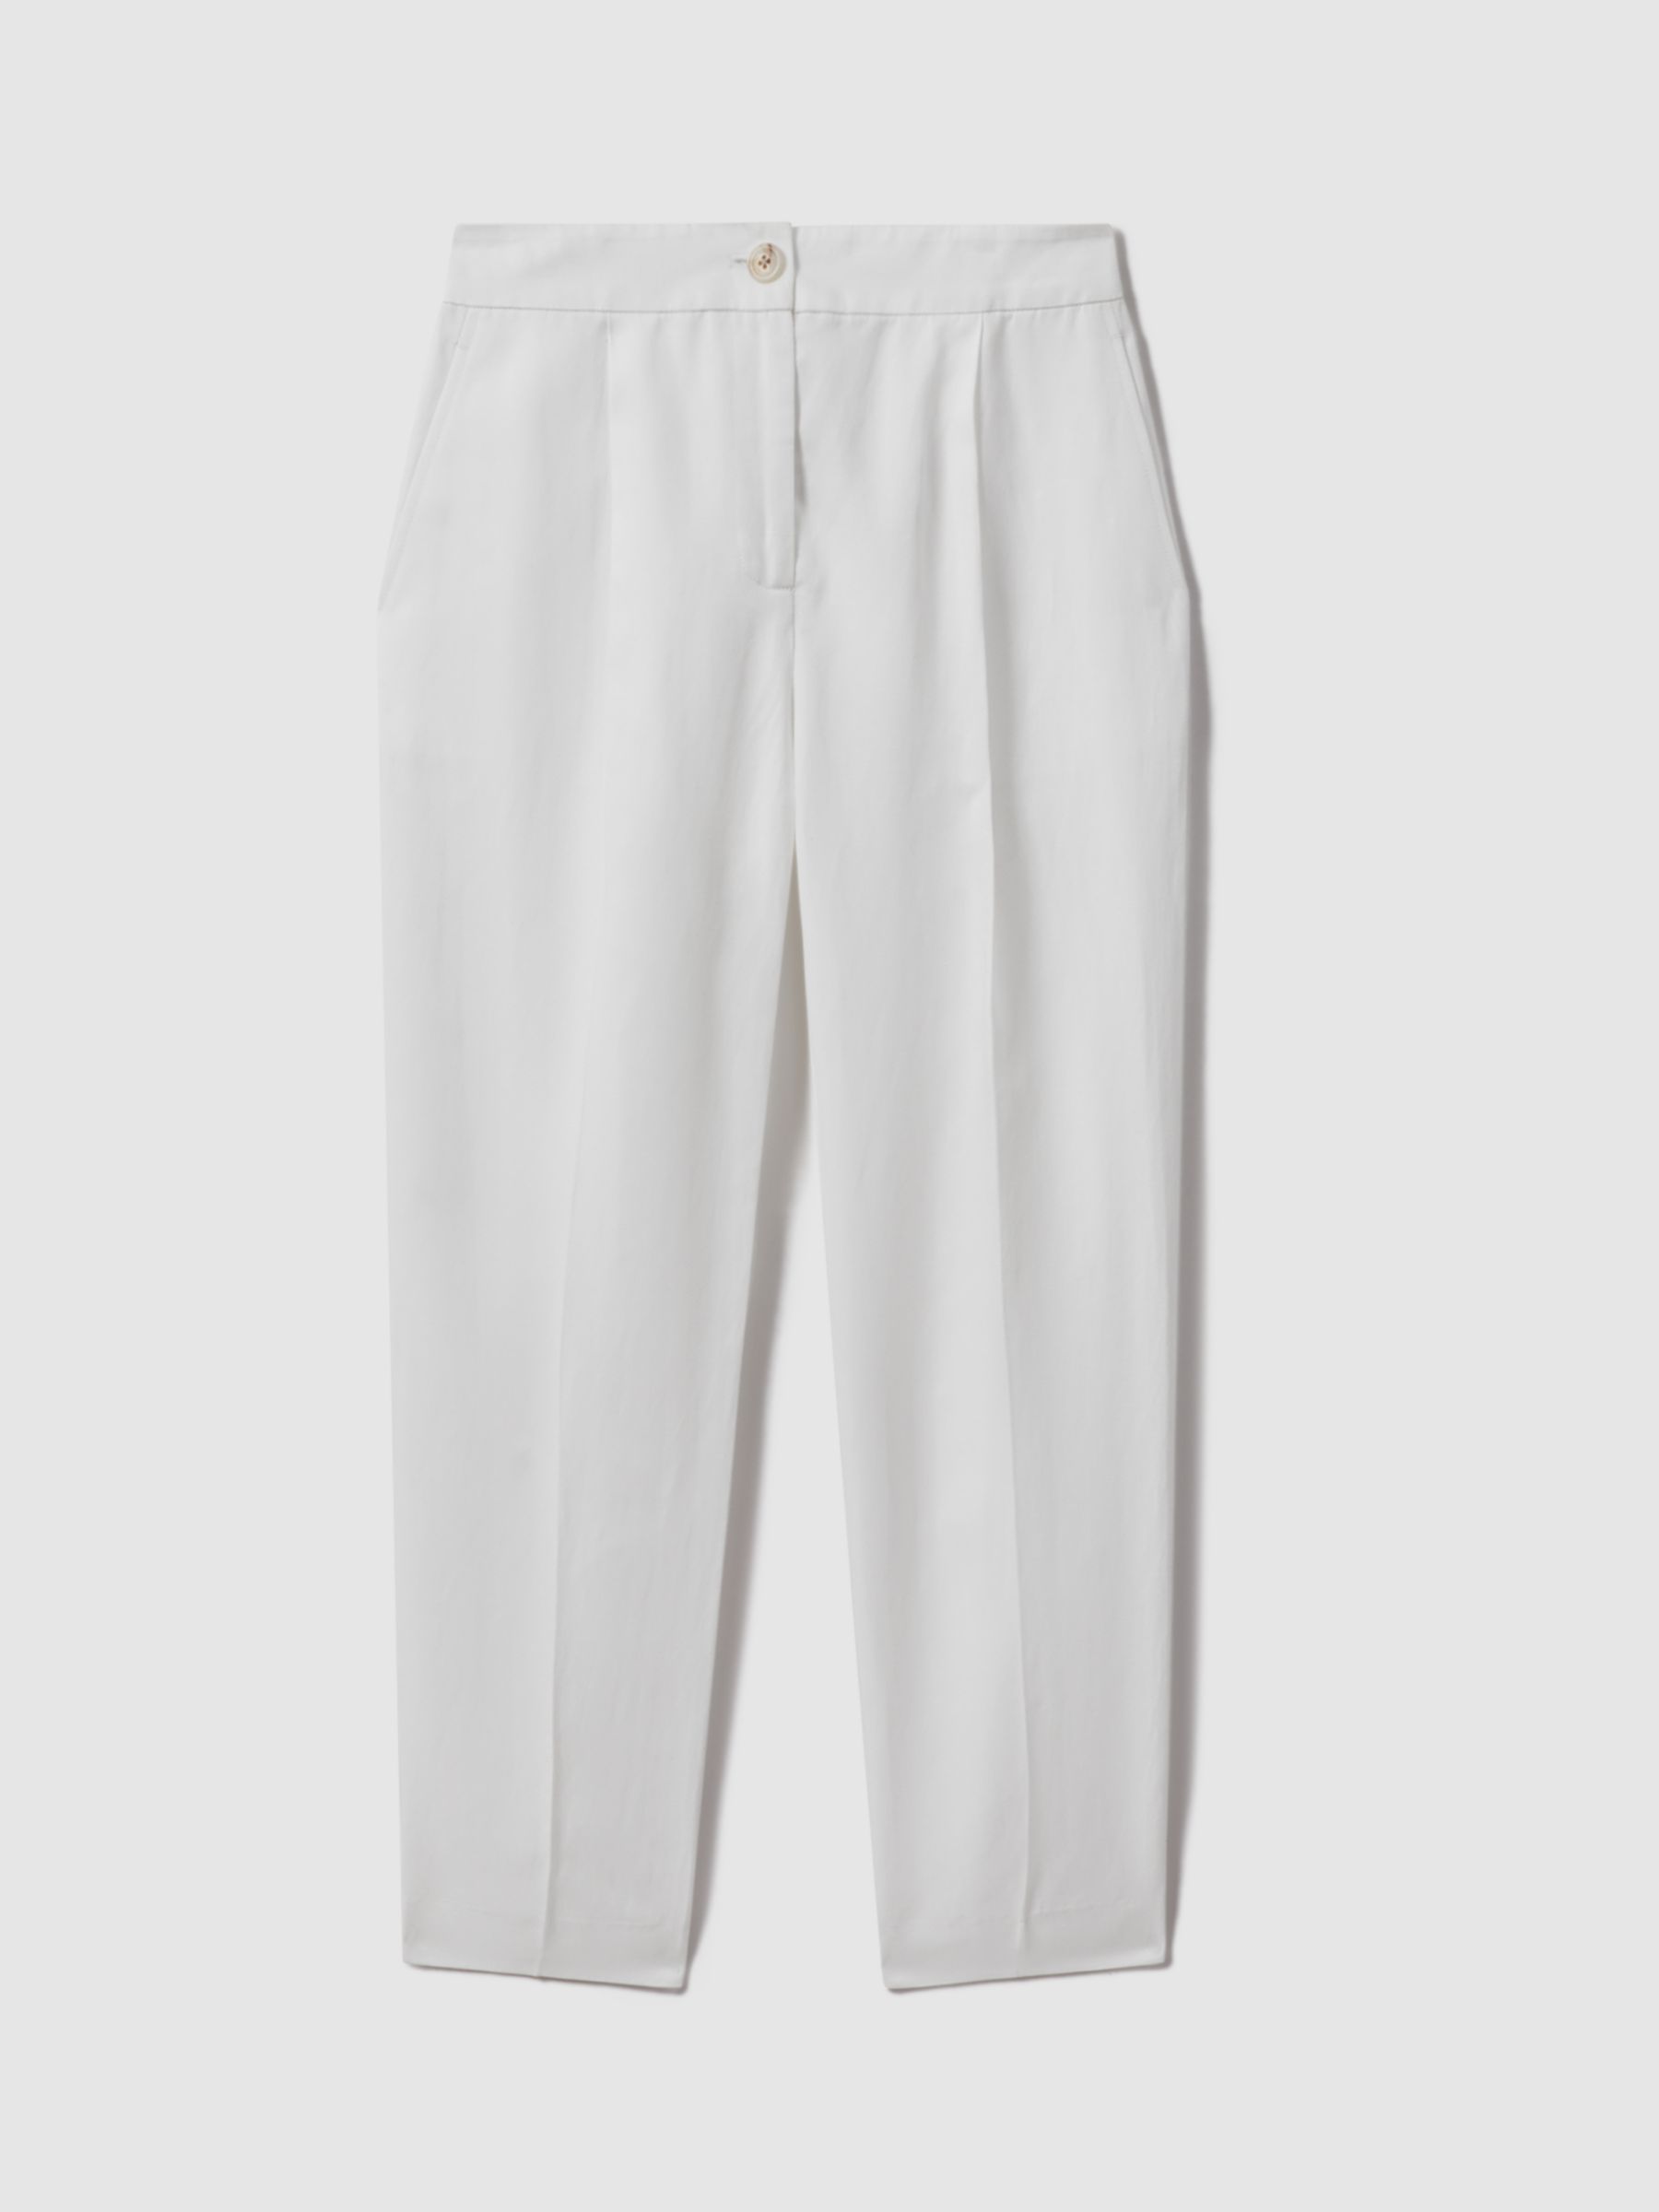 Buy Reiss Farrah Linen Blend Trousers, White Online at johnlewis.com